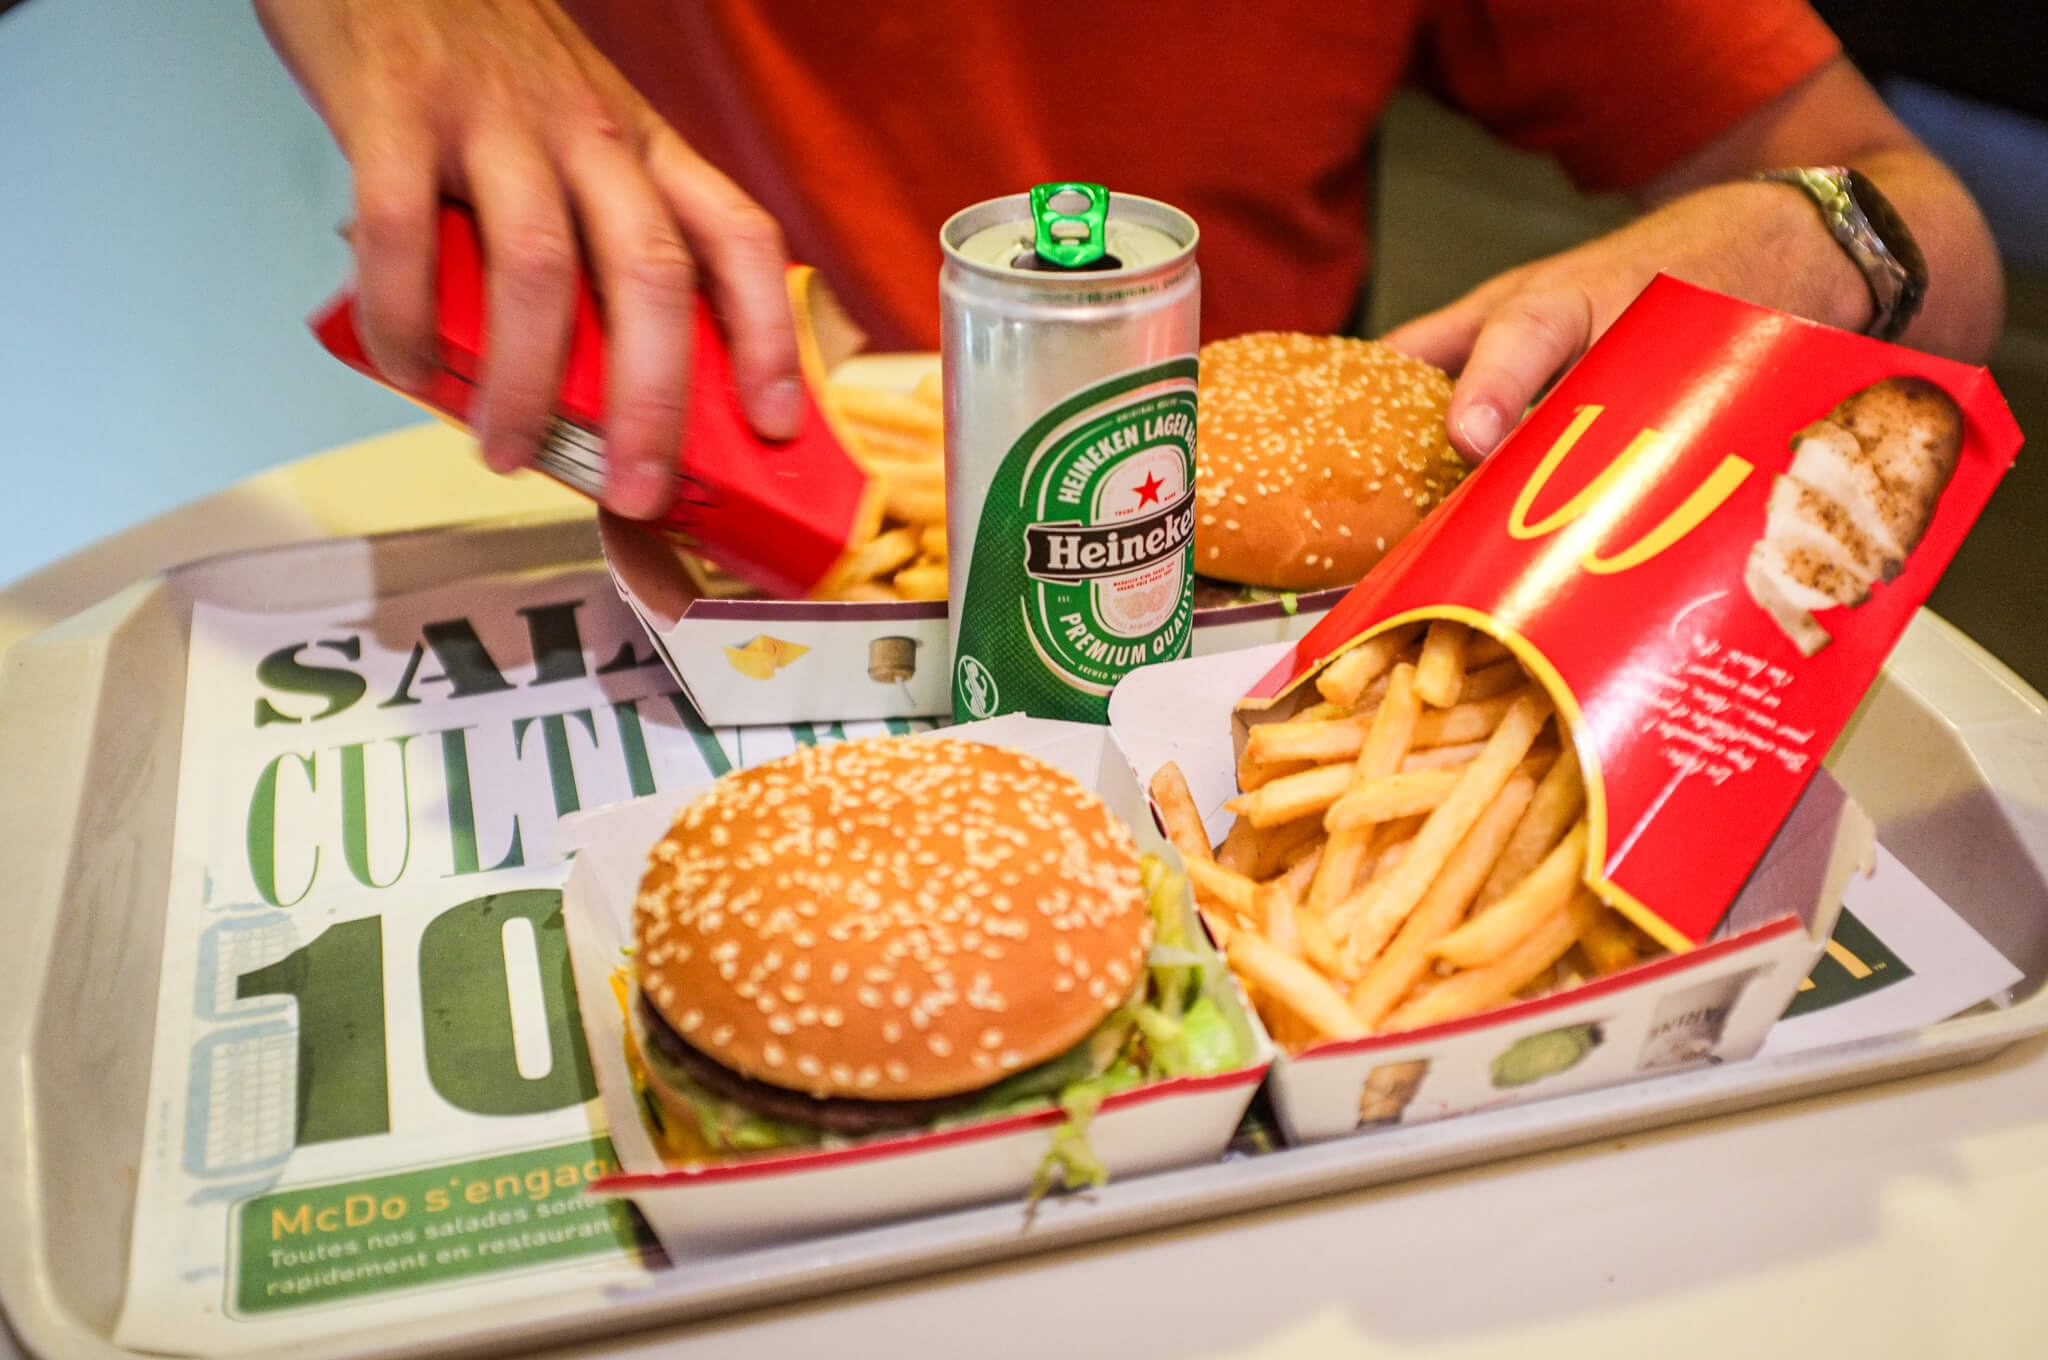 Big Mac and Heineken beer at McDonald's in Paris